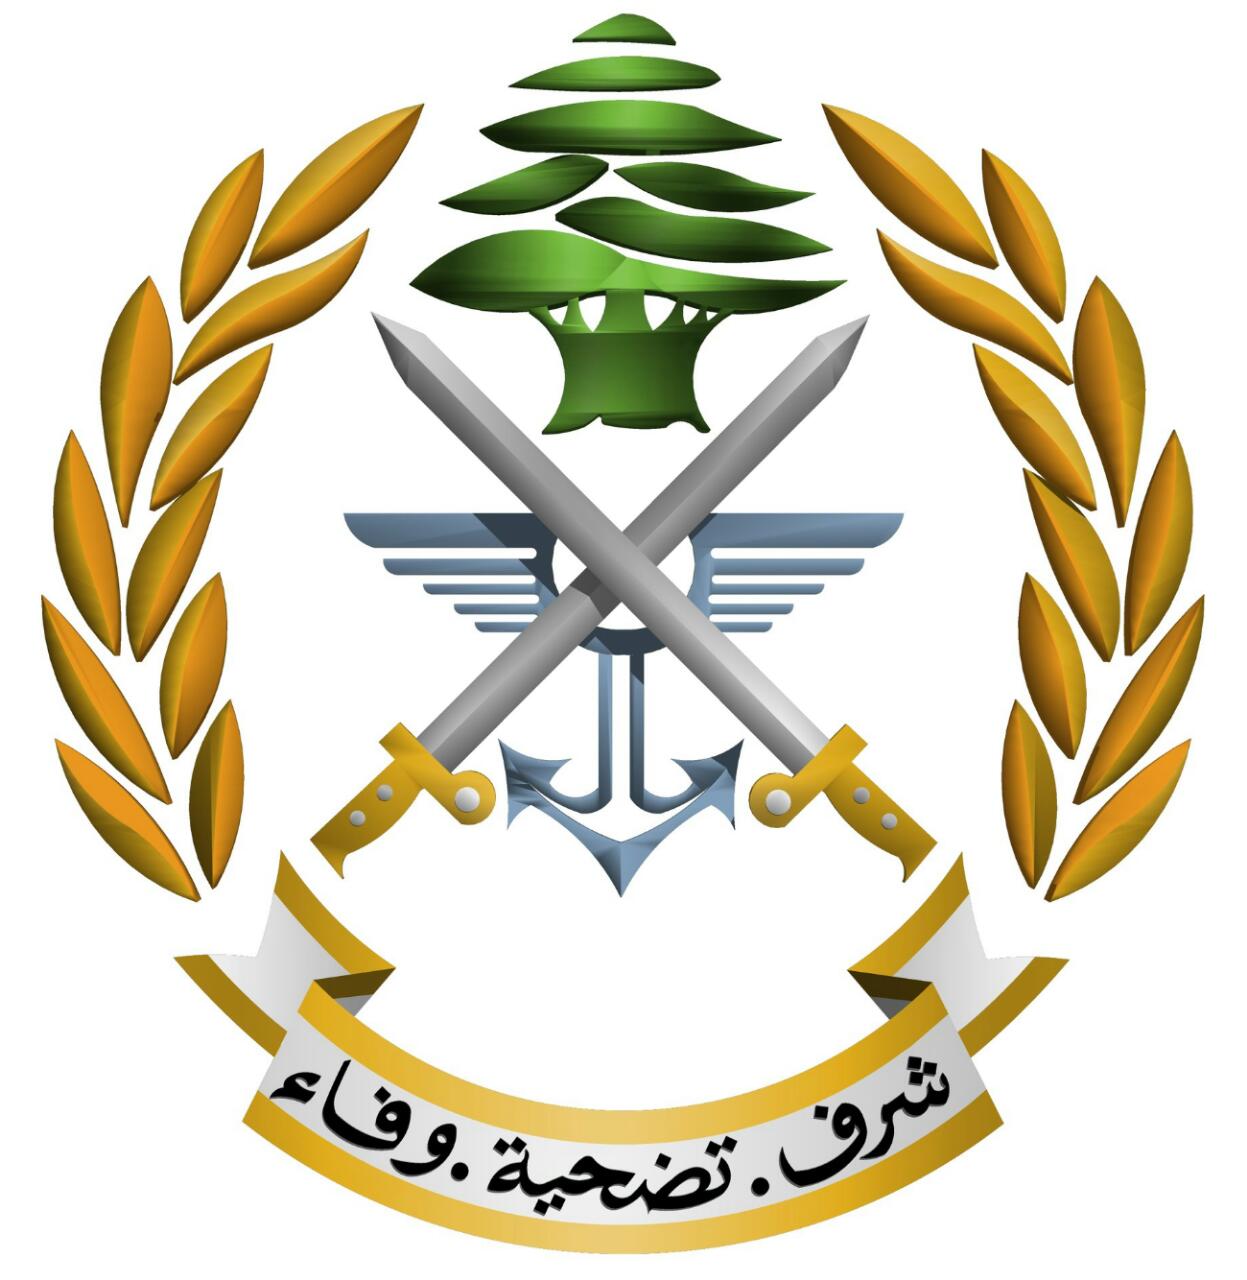 الجيش اللبناني: الجانب اللبناني شدد في اجتماع الناقورة على ضرورة انسحاب العدو من الاراضي اللبنانية المحتلة